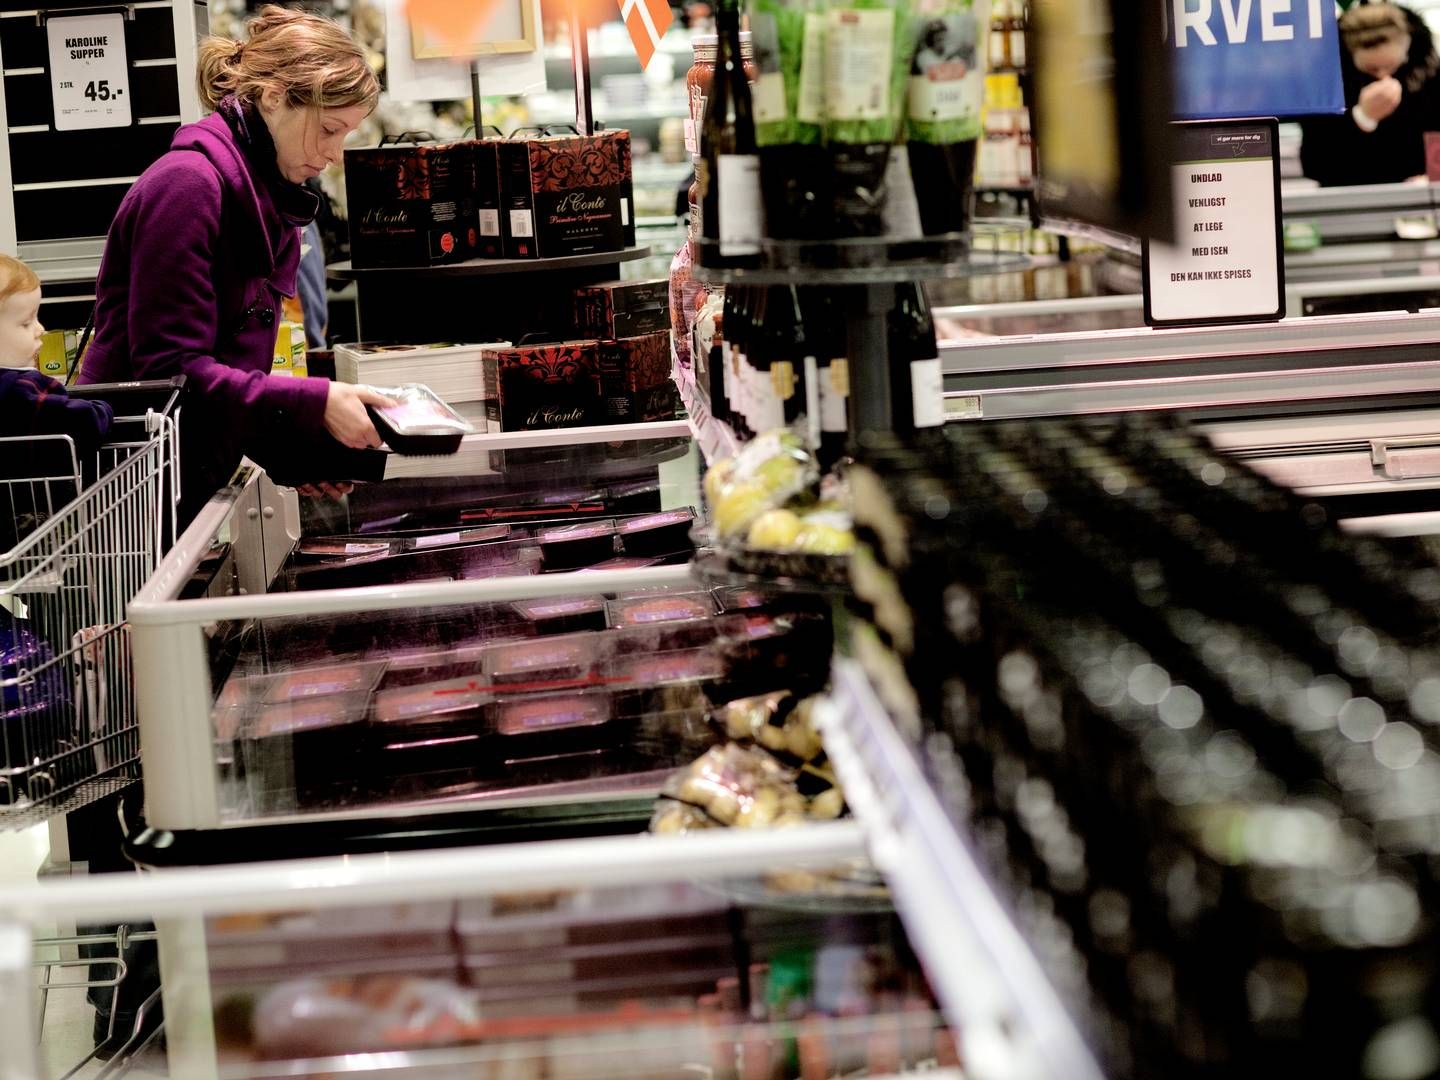 Dyrevelfærden fylder meget for mange danskere, når de handler i supermarkedet, viser ny undersøgelse. | Foto: Peter Hove Olesen/Ritzau Scanpix.